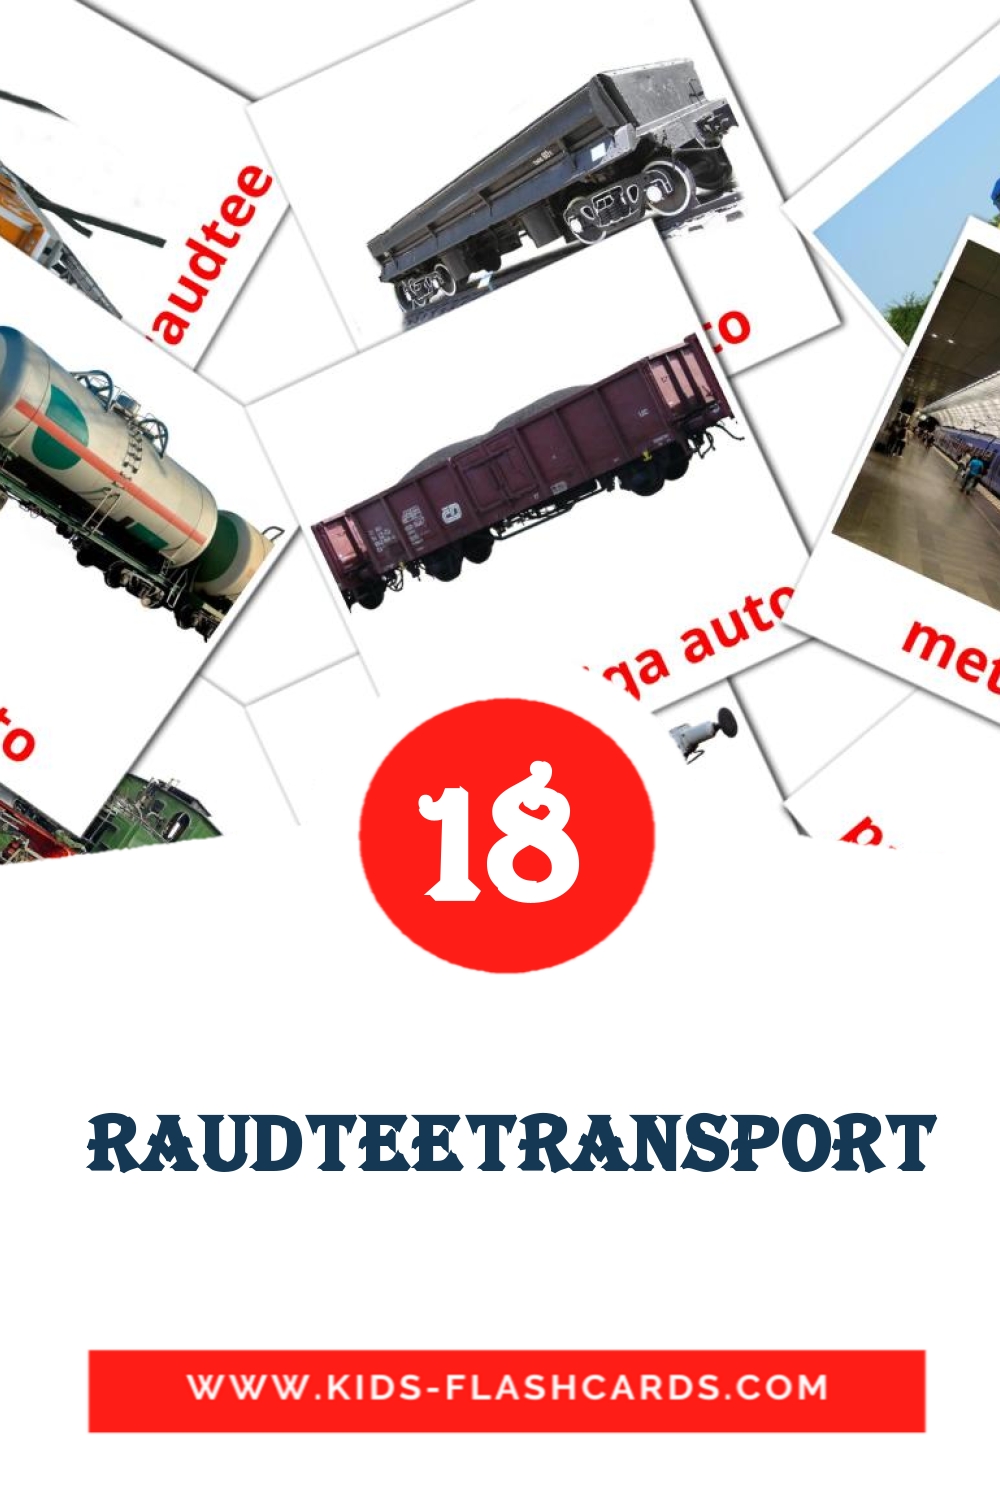  raudteetransport на эстонском для Детского Сада (18 карточек)